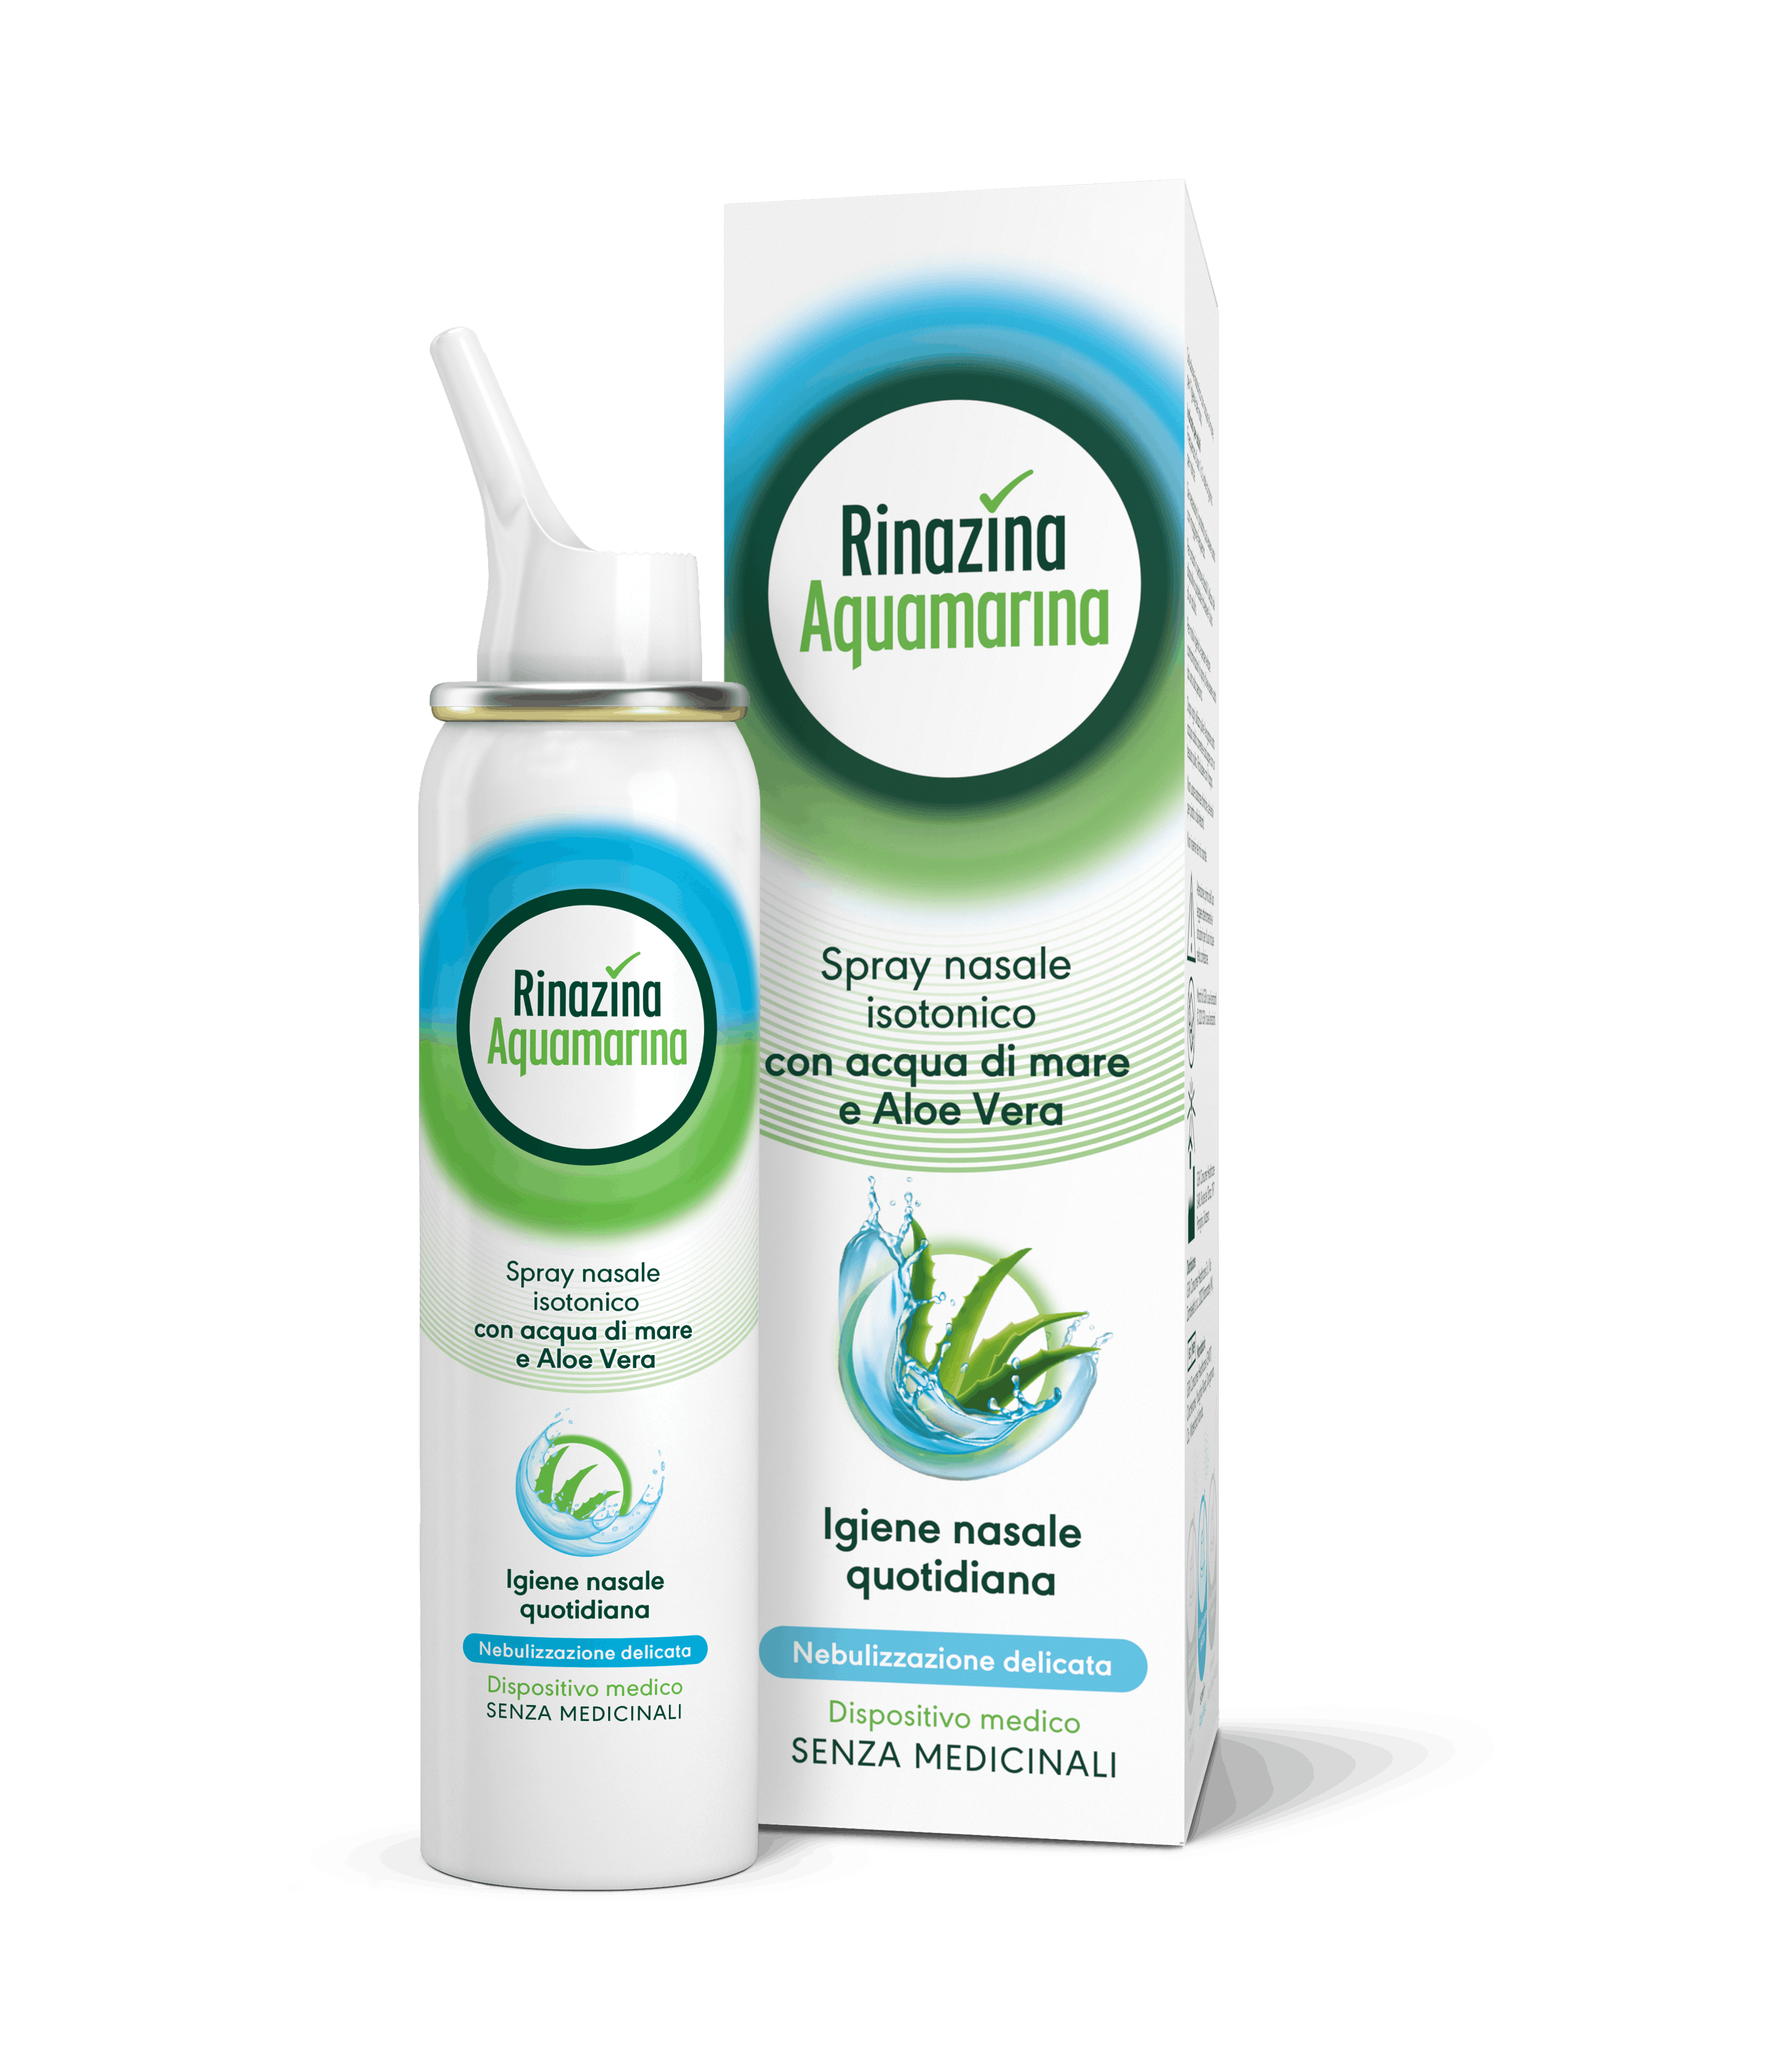 Confezione Rinazina Acquamarina Spray Nebulizzazione Delicata - Rinazina